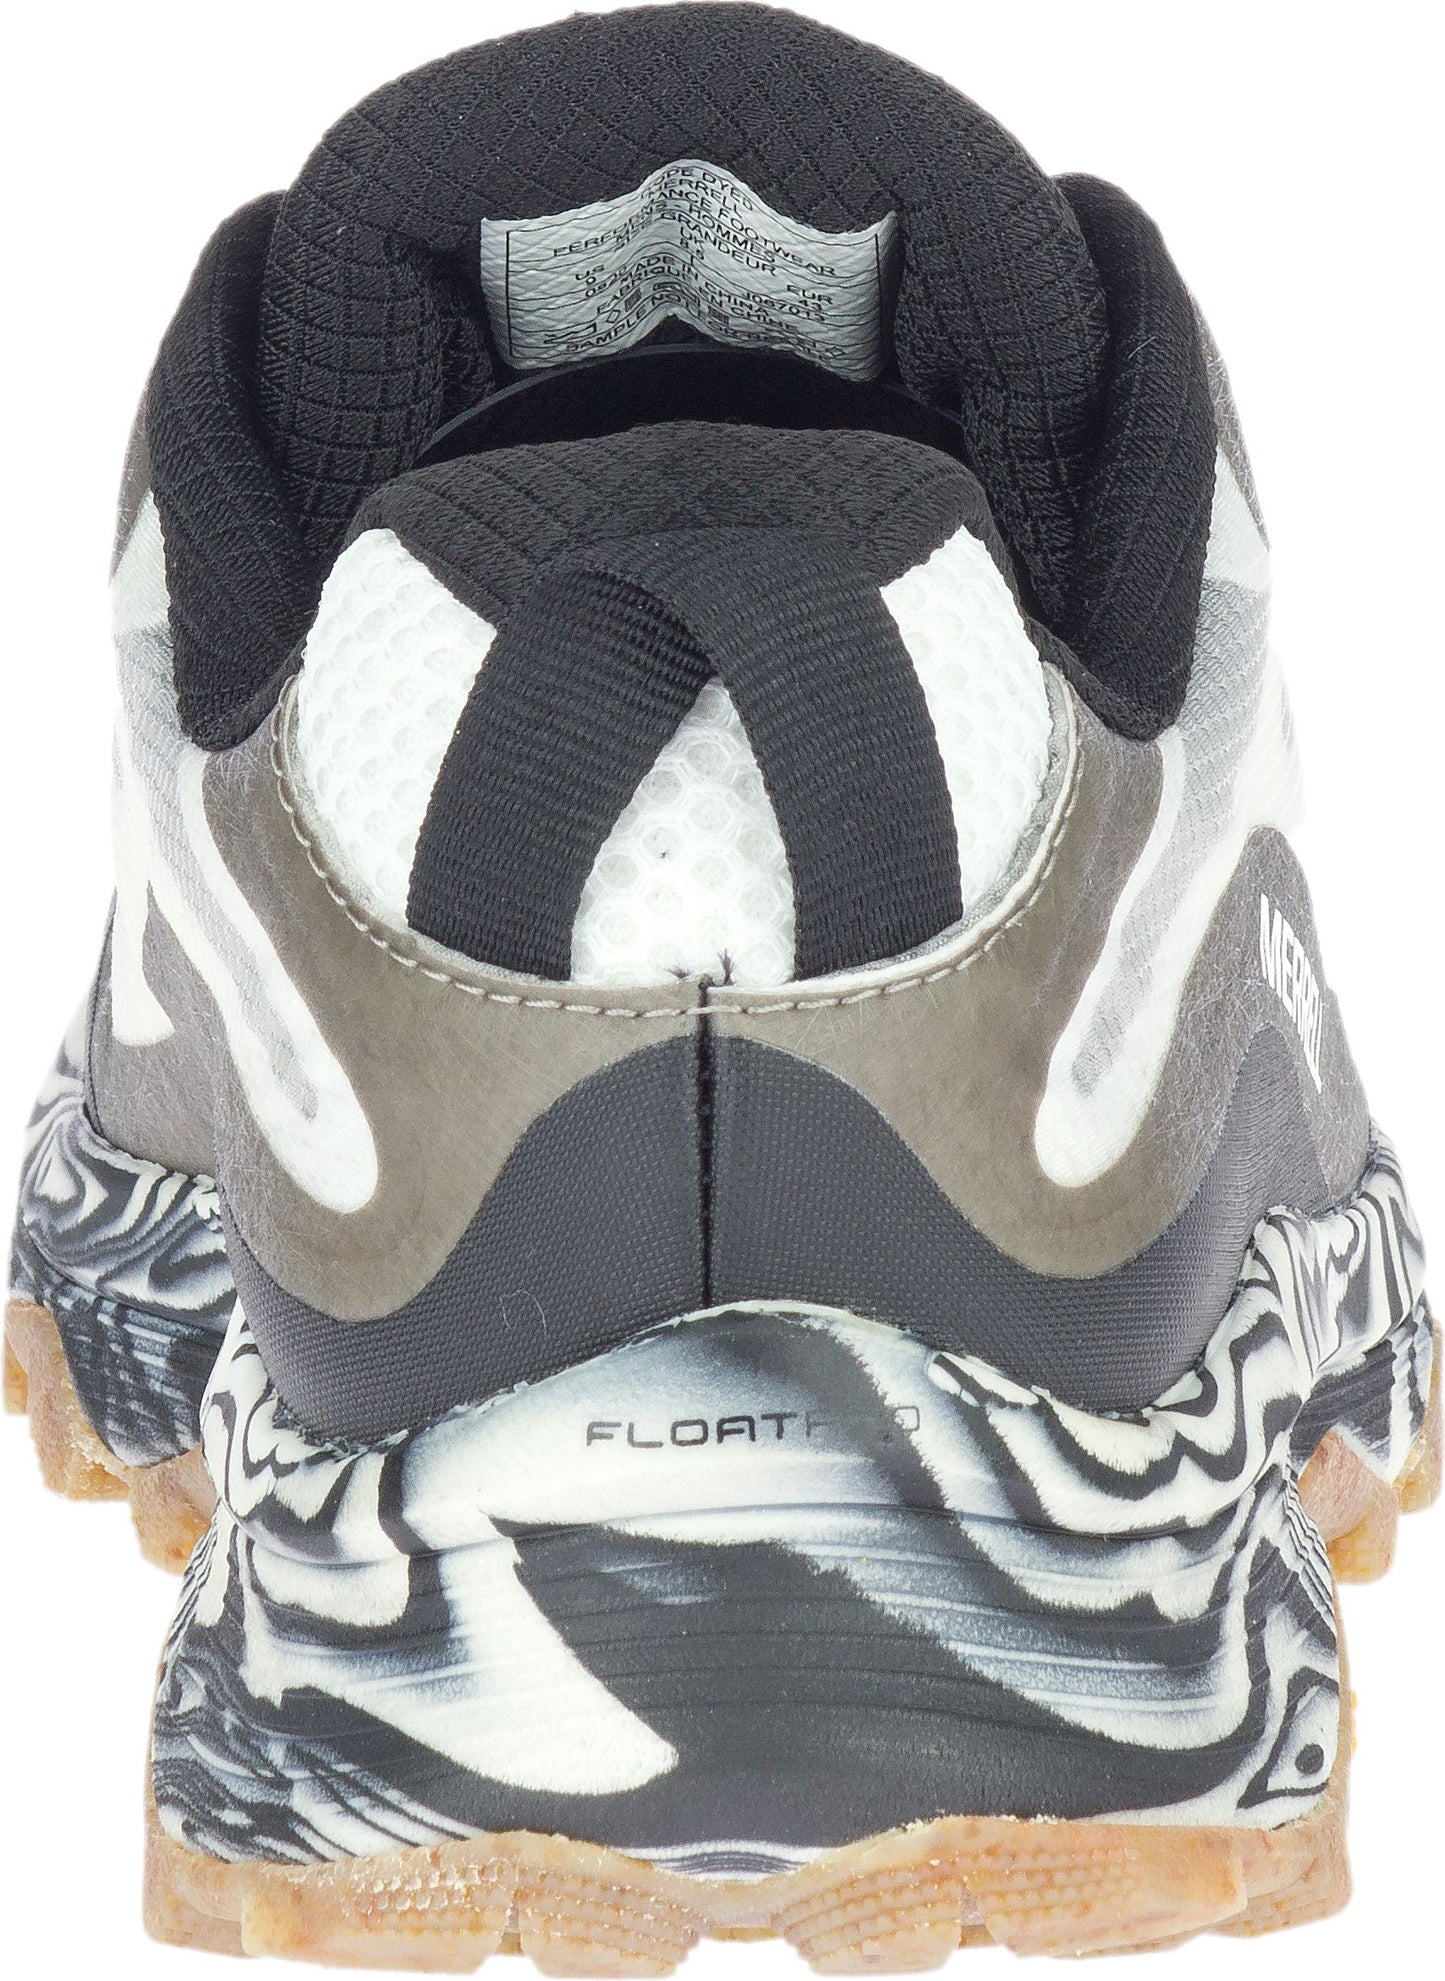 Merrell Shoes Moab Speed Solution Dye Black White